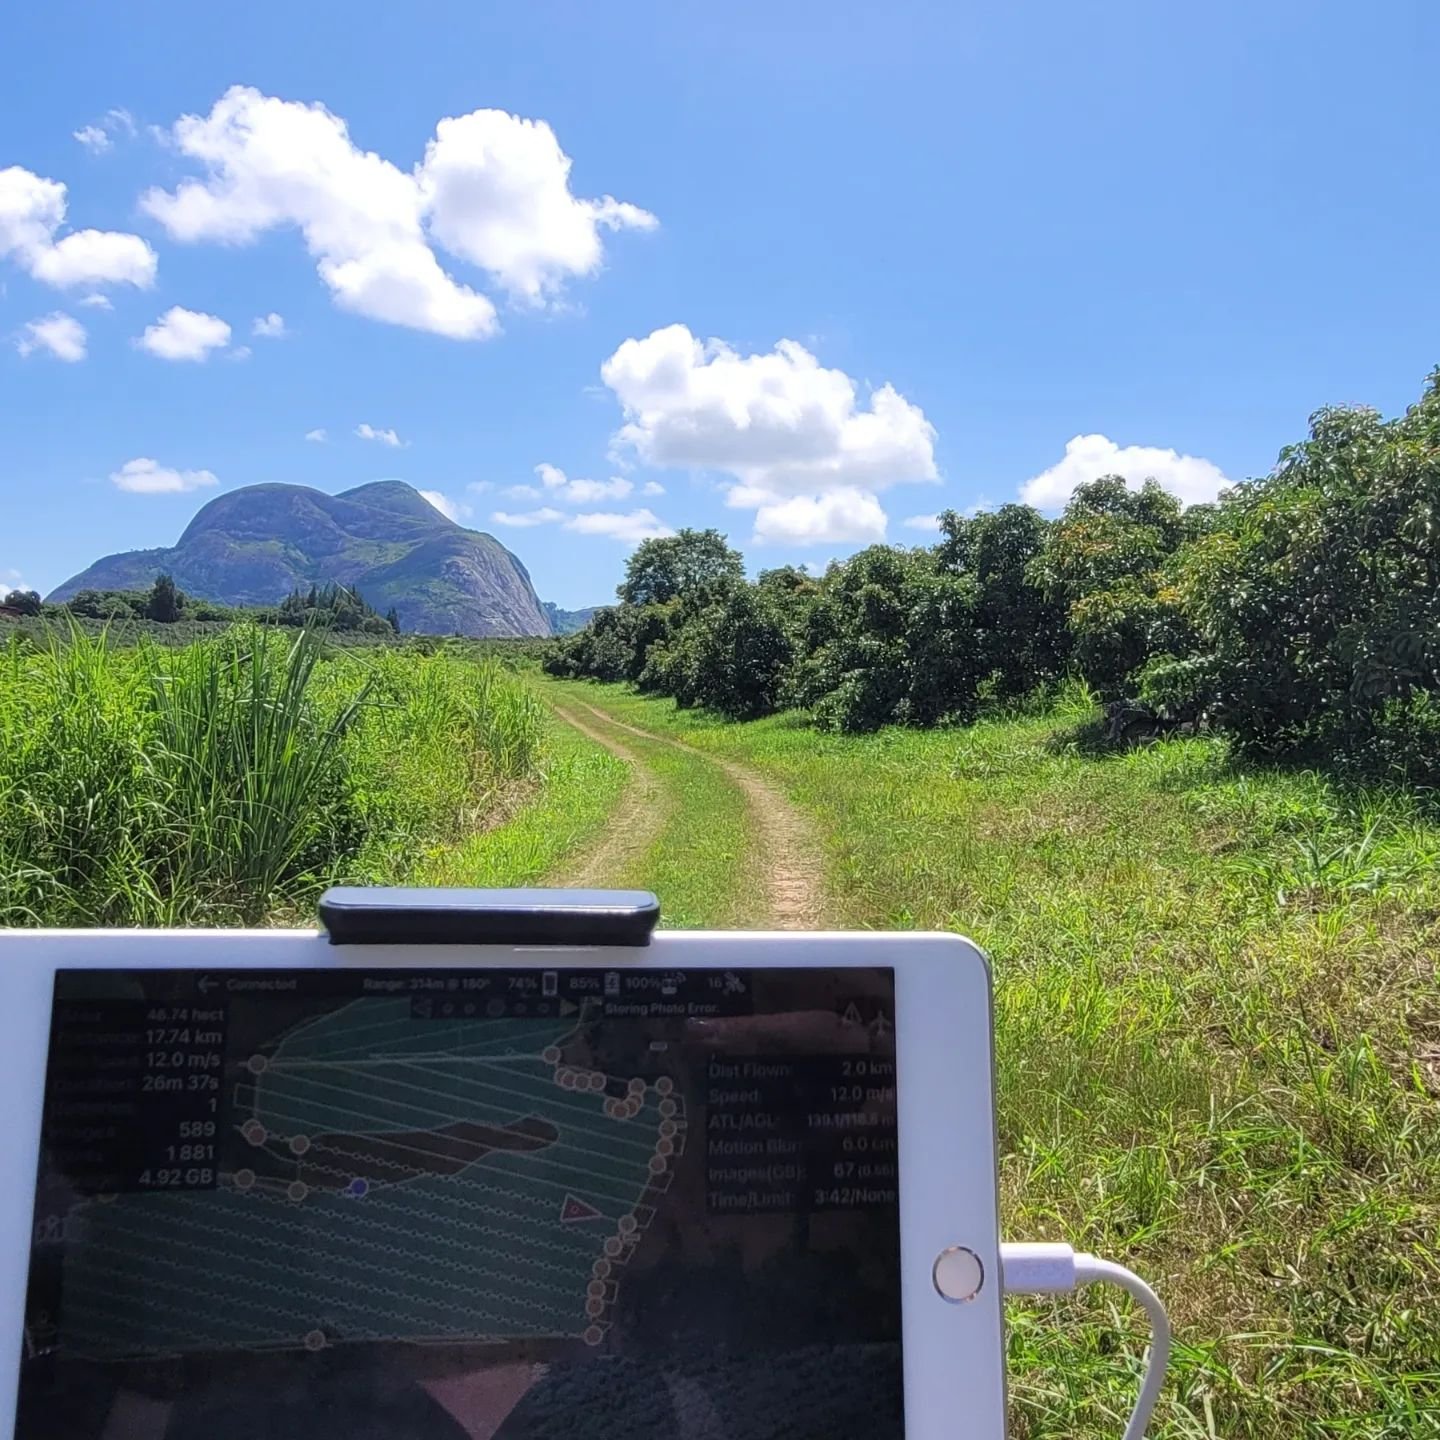 Drone Surveying Avocado Farming Mozambique _ AGMO Drone Services-1.jpeg